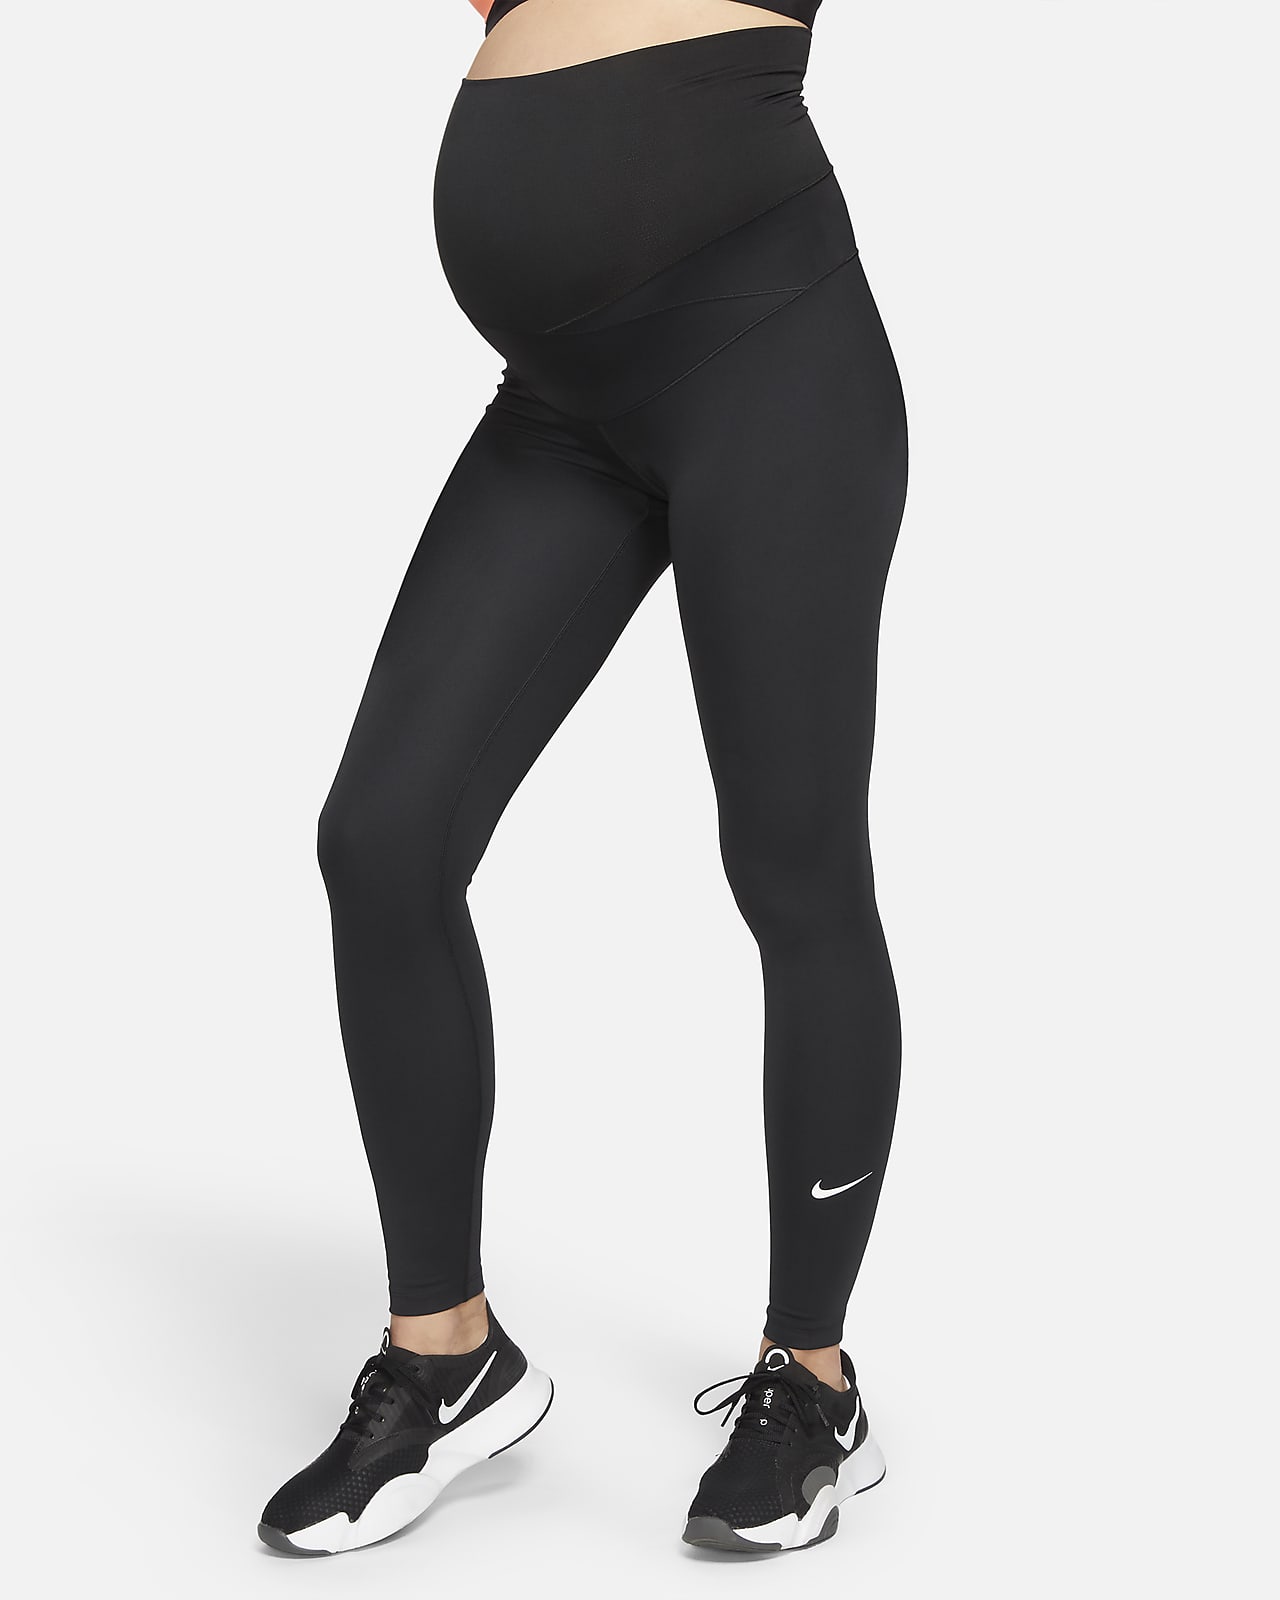  Nike One Women's High-Waisted Leggings (Maternity